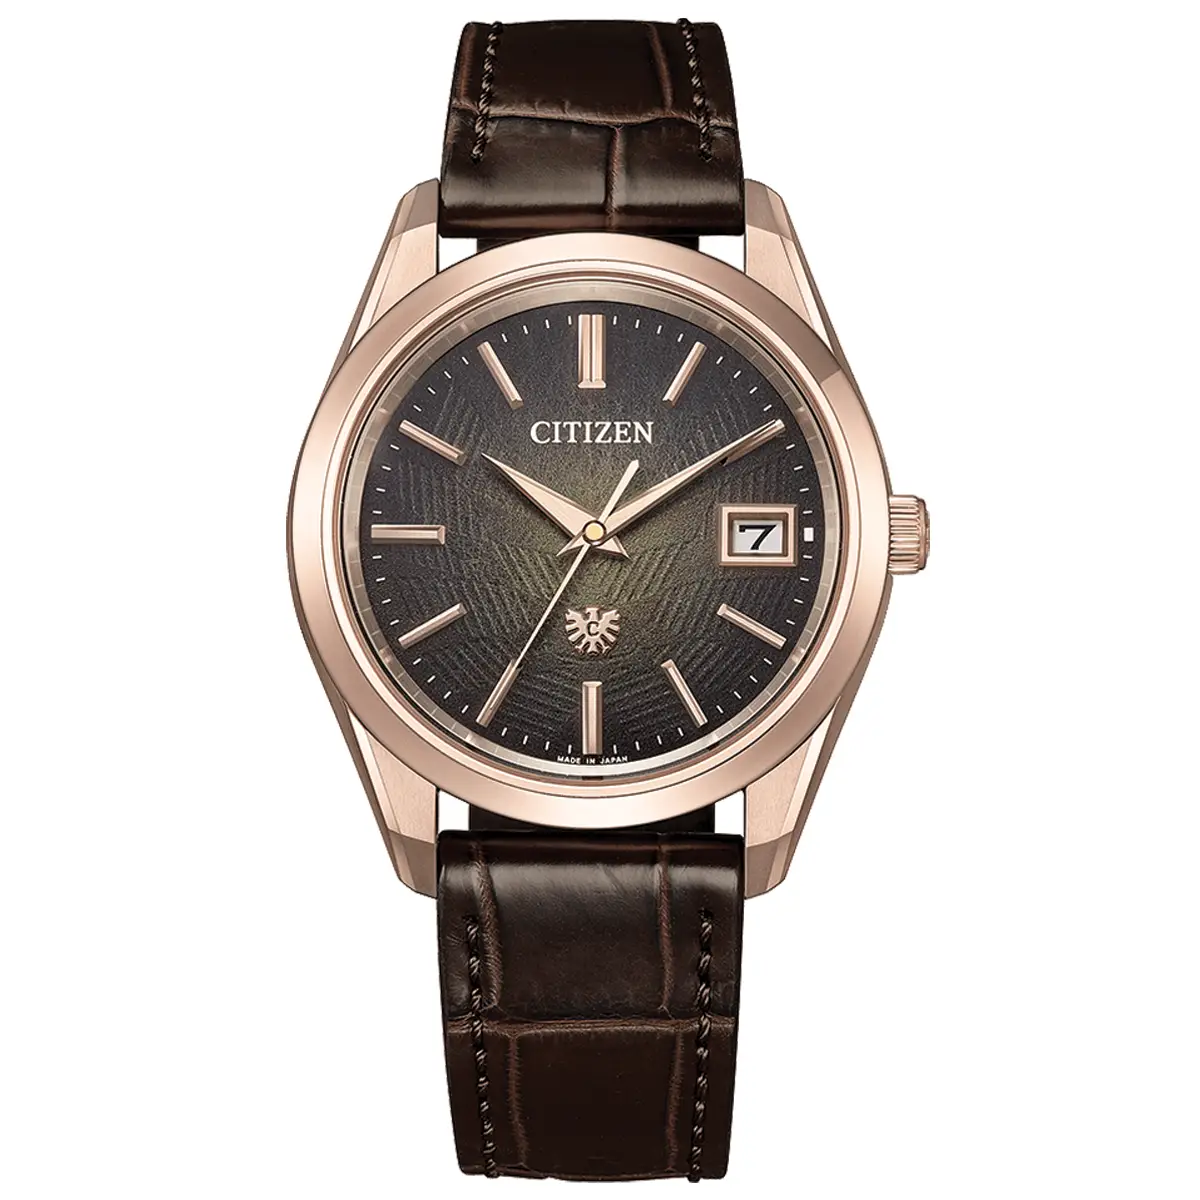 Đồng hồ The Citizen Iconic Nature Titanium Limited Edition AQ4106-00W với mặt số màu nâu. Dây đeo bằng da. Thân vỏ bằng titanium.